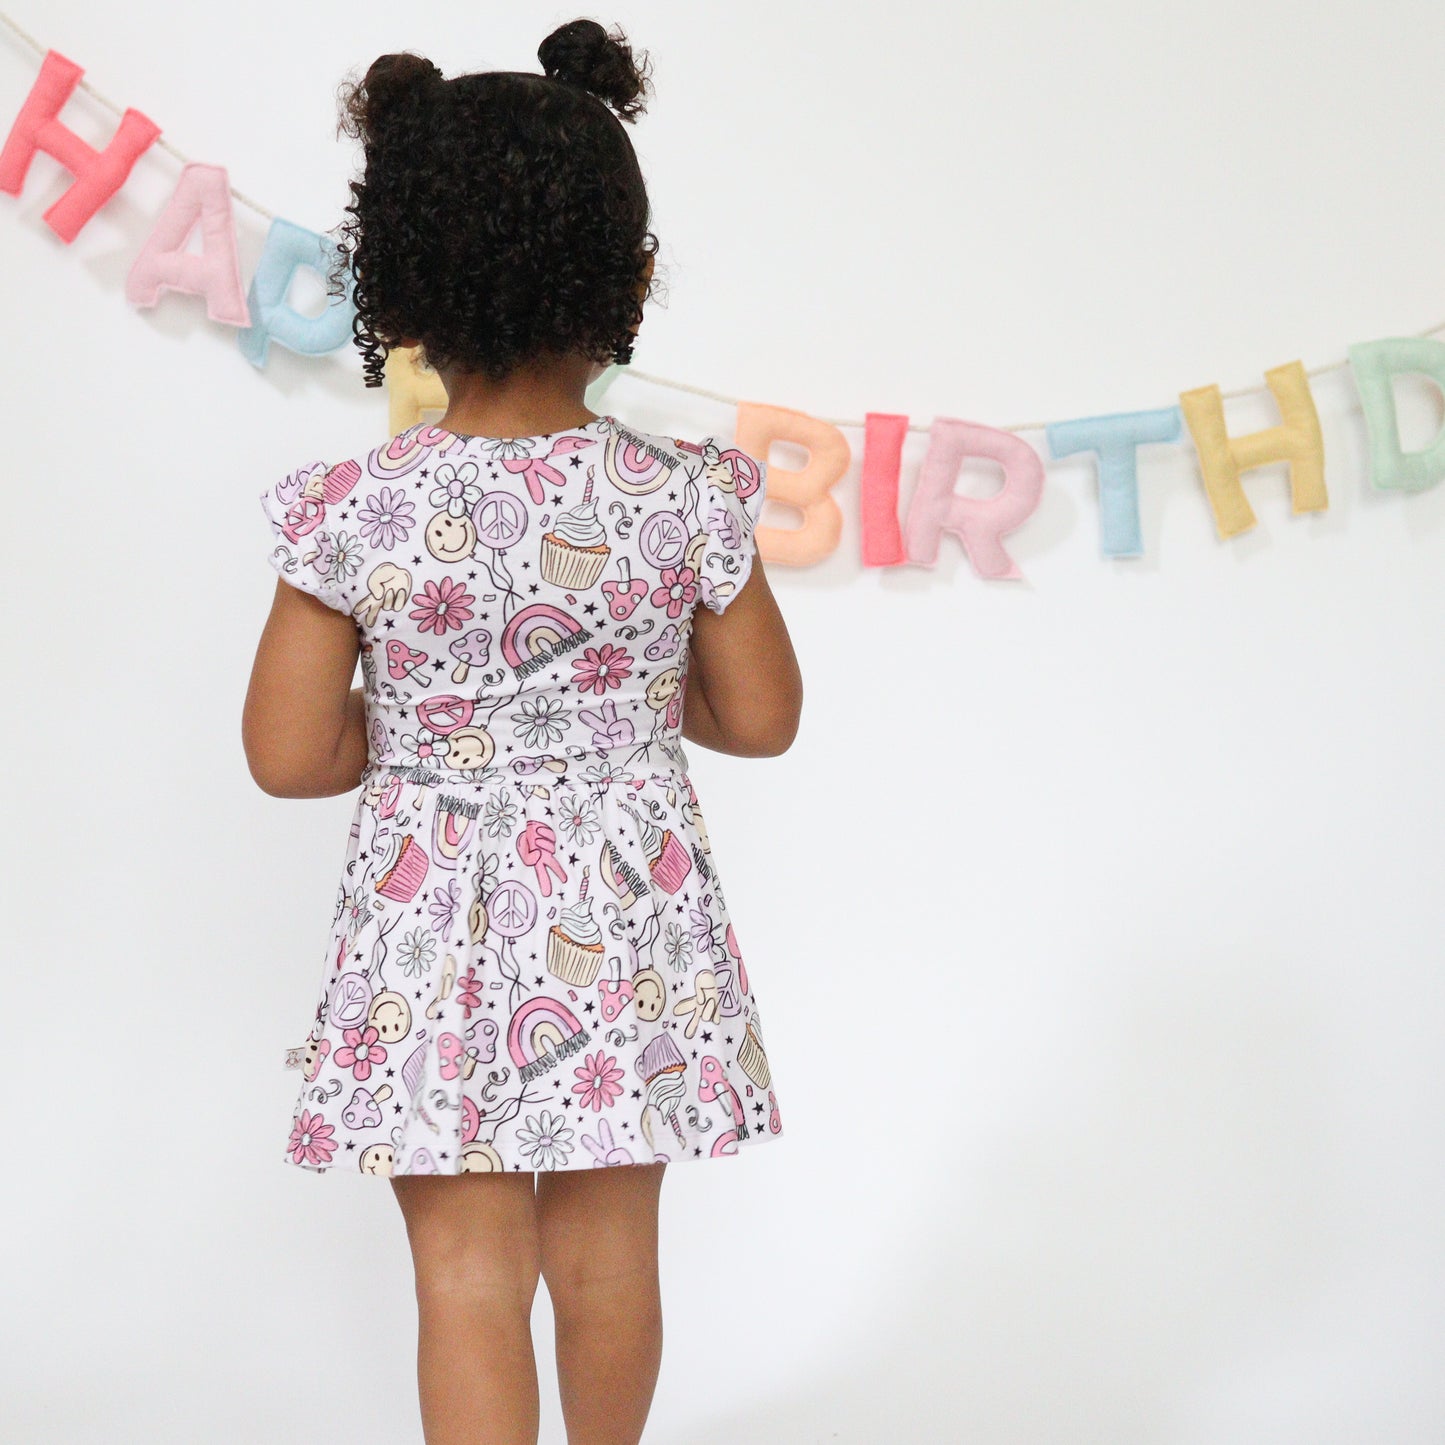 Groovy Birthday Bodysuit Twirl Dress